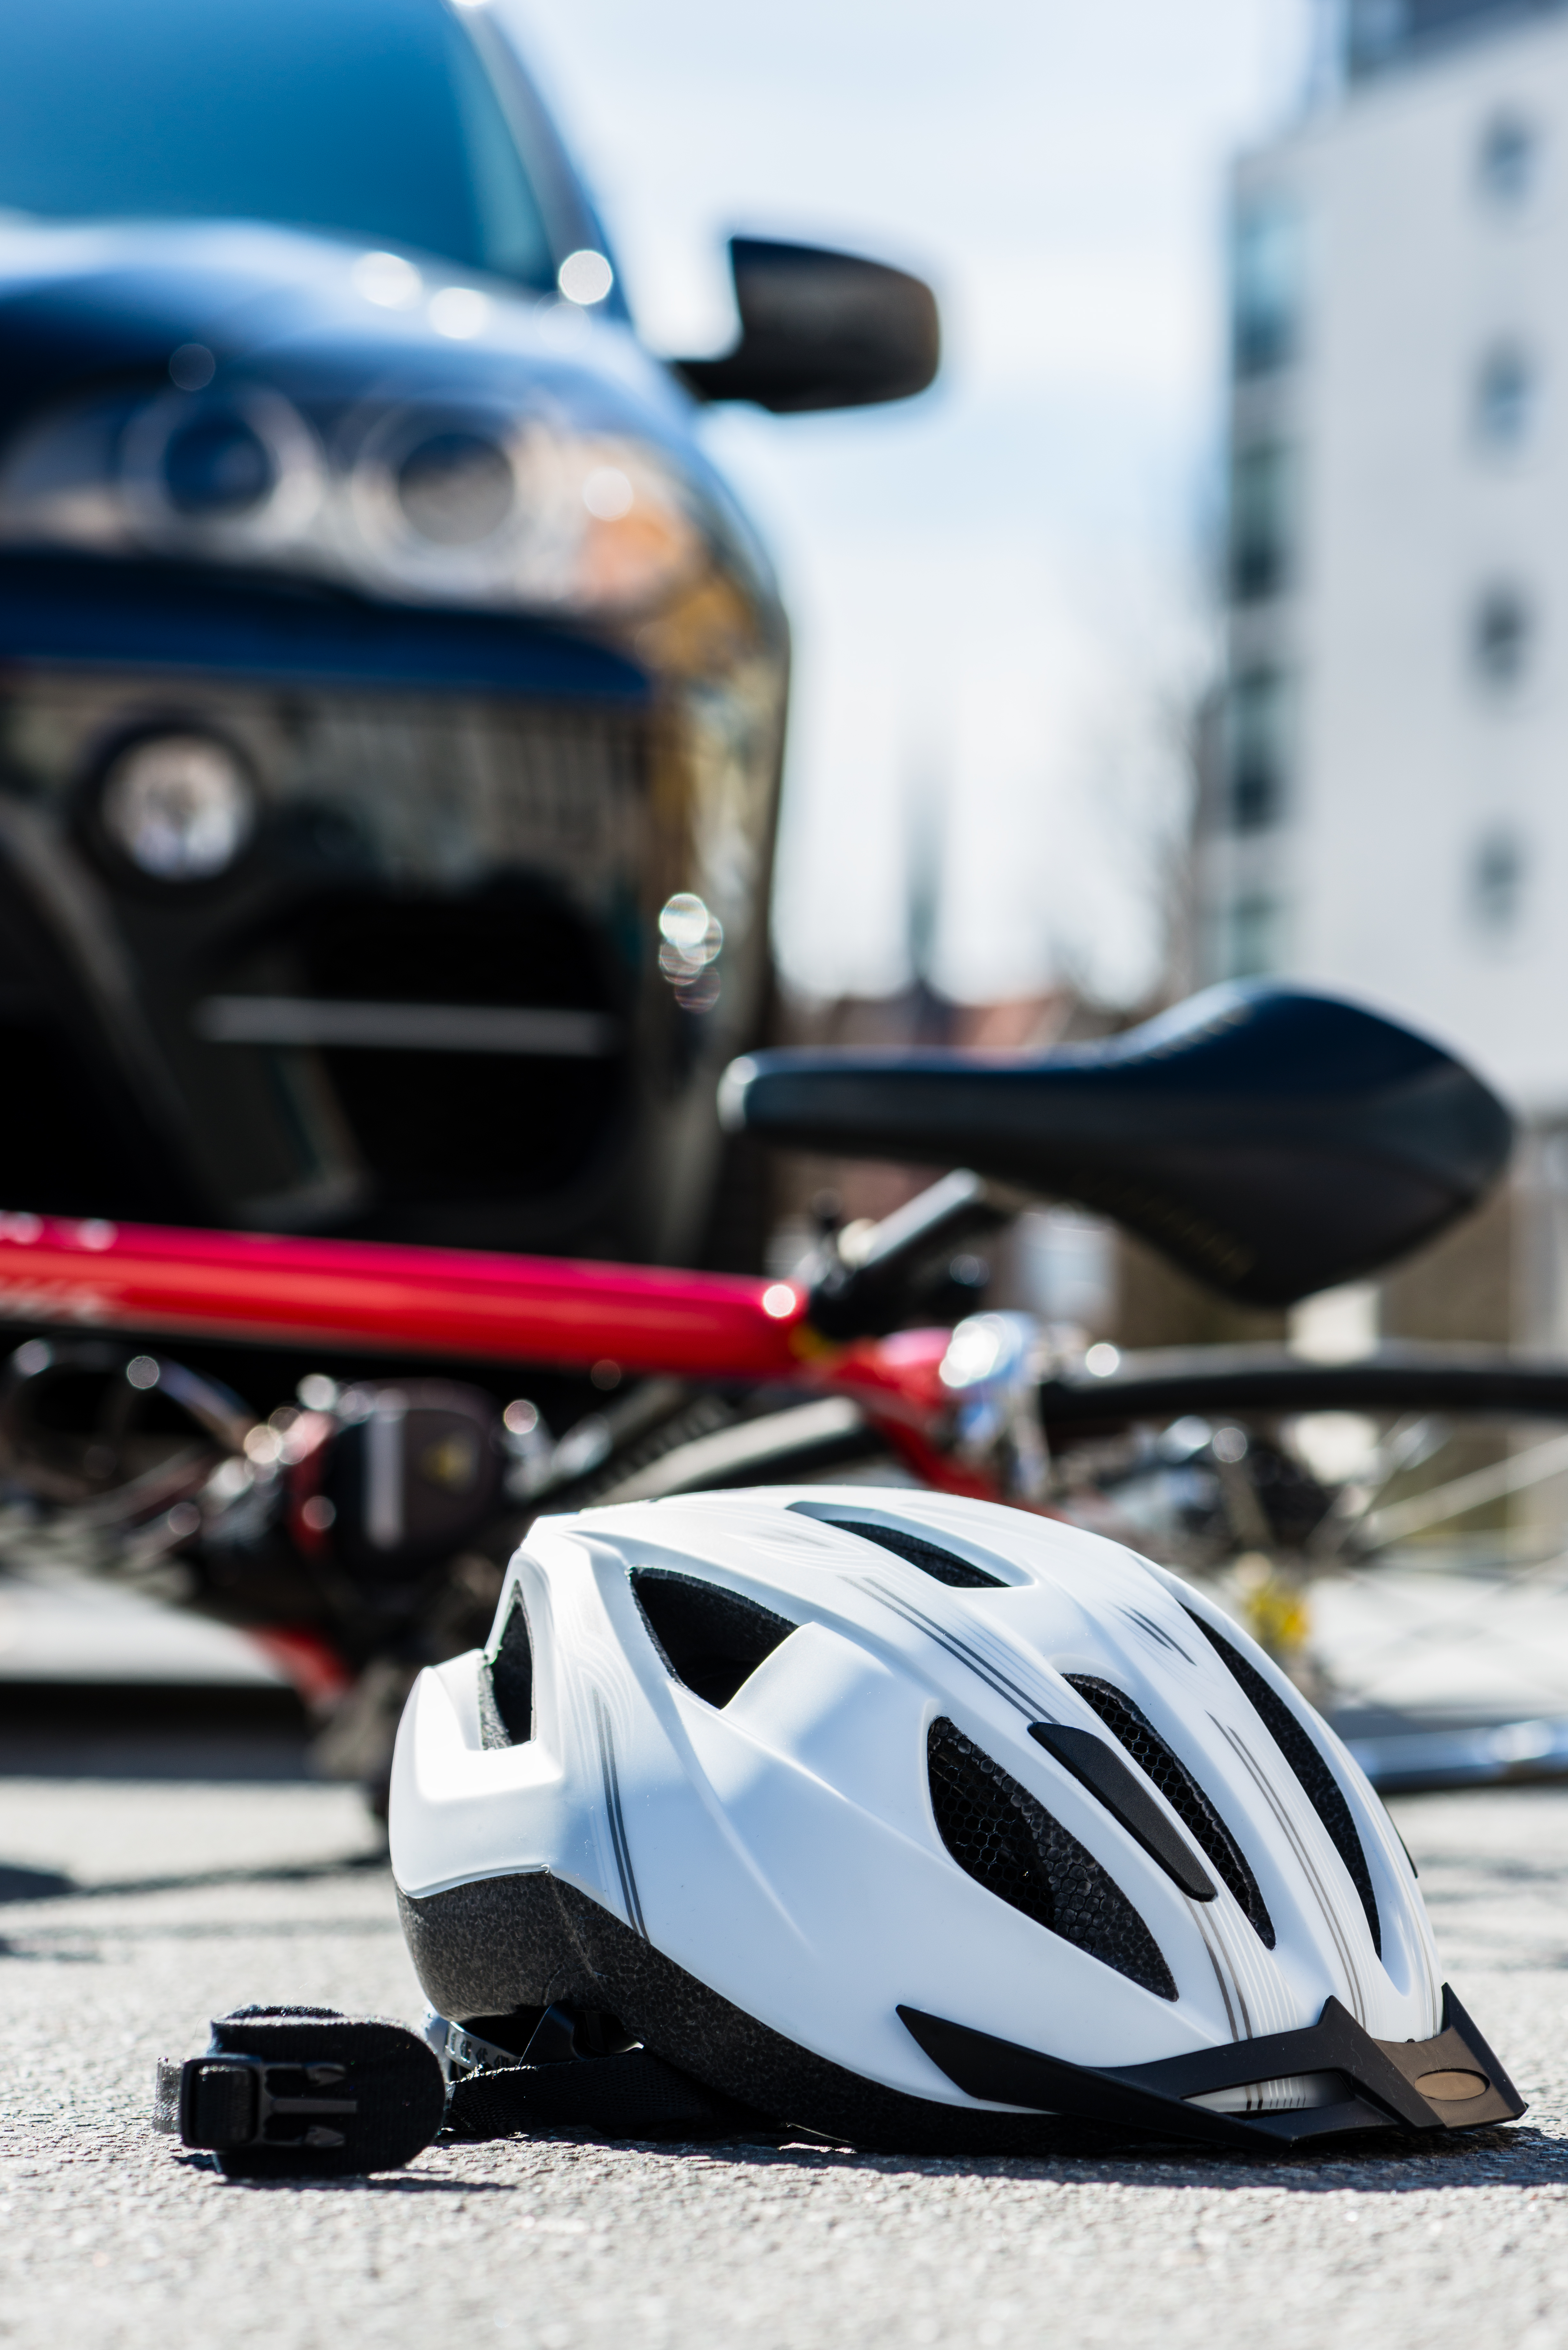 Biciklist gázoltak Pellérden, szemtanúkat keres a rendőrség - Blikk